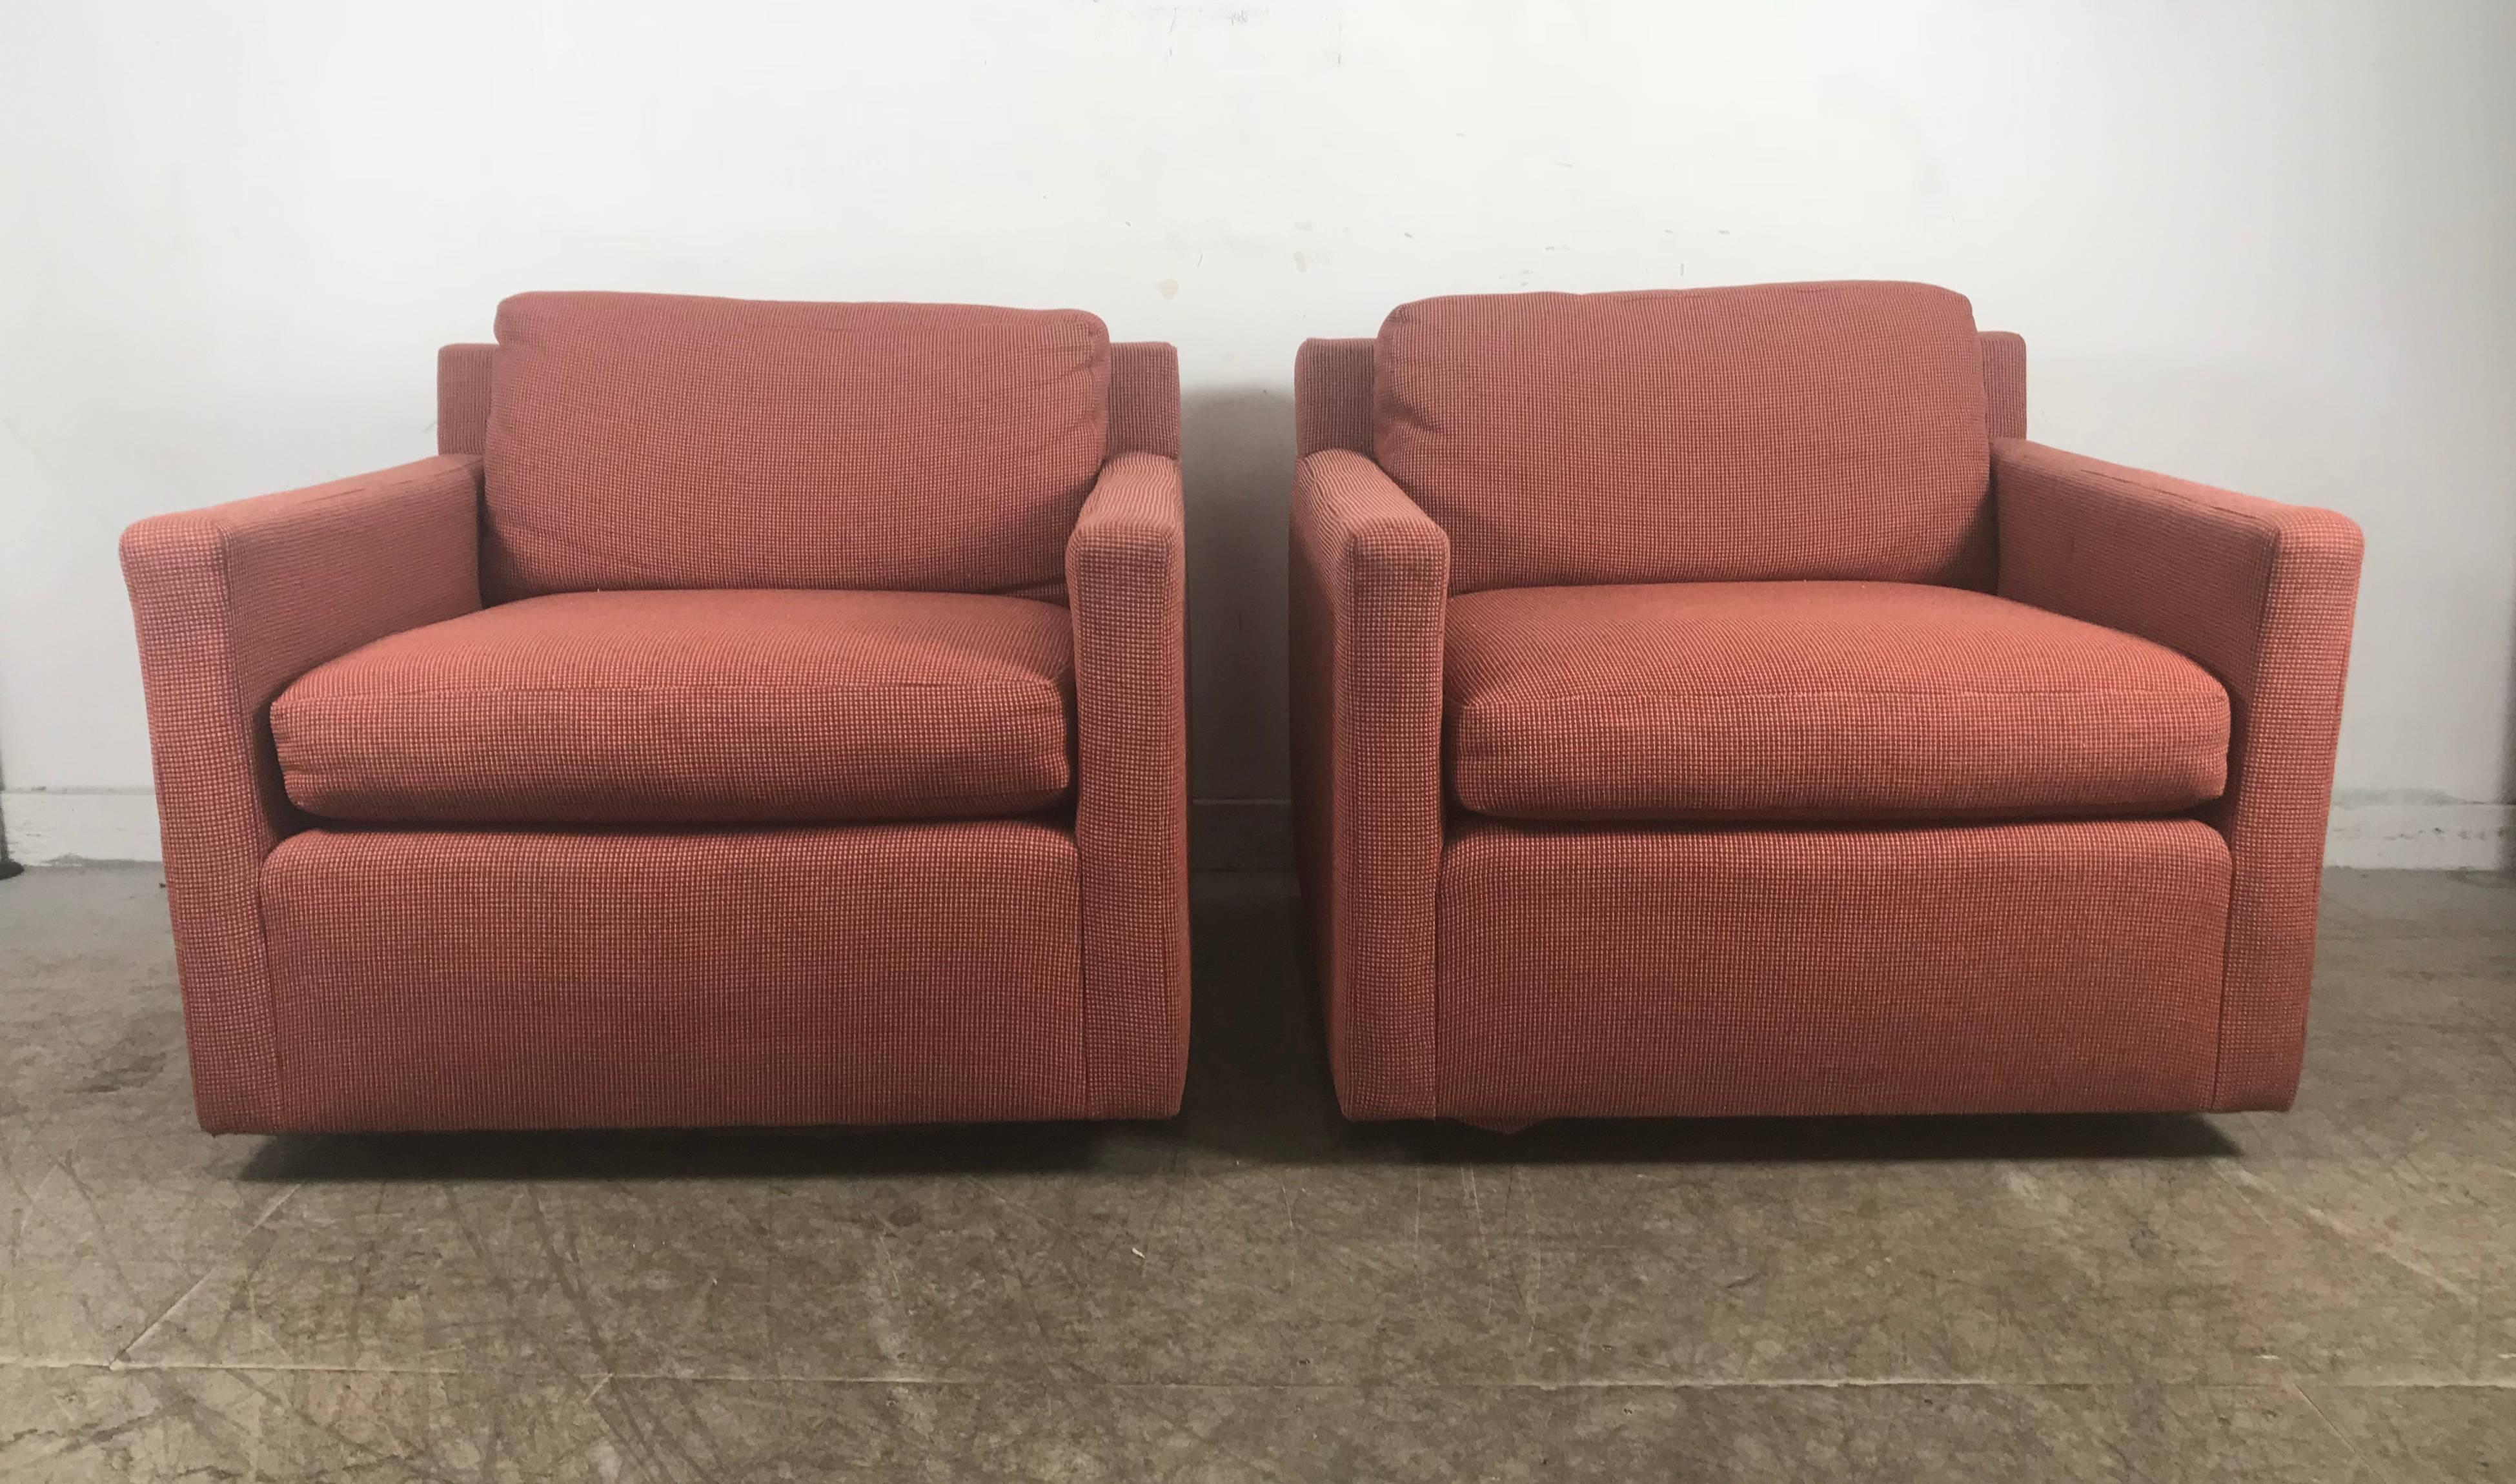 Atemberaubendes Paar Würfel-Lounge-Stühle, die Milo Baughman zugeschrieben werden. Klassisches schwebendes Design. Sockel aus schwarzem Lack. Beibehaltung der Originalpolsterung aus orangefarbenem oder lachsfarbenem Wollstoff.